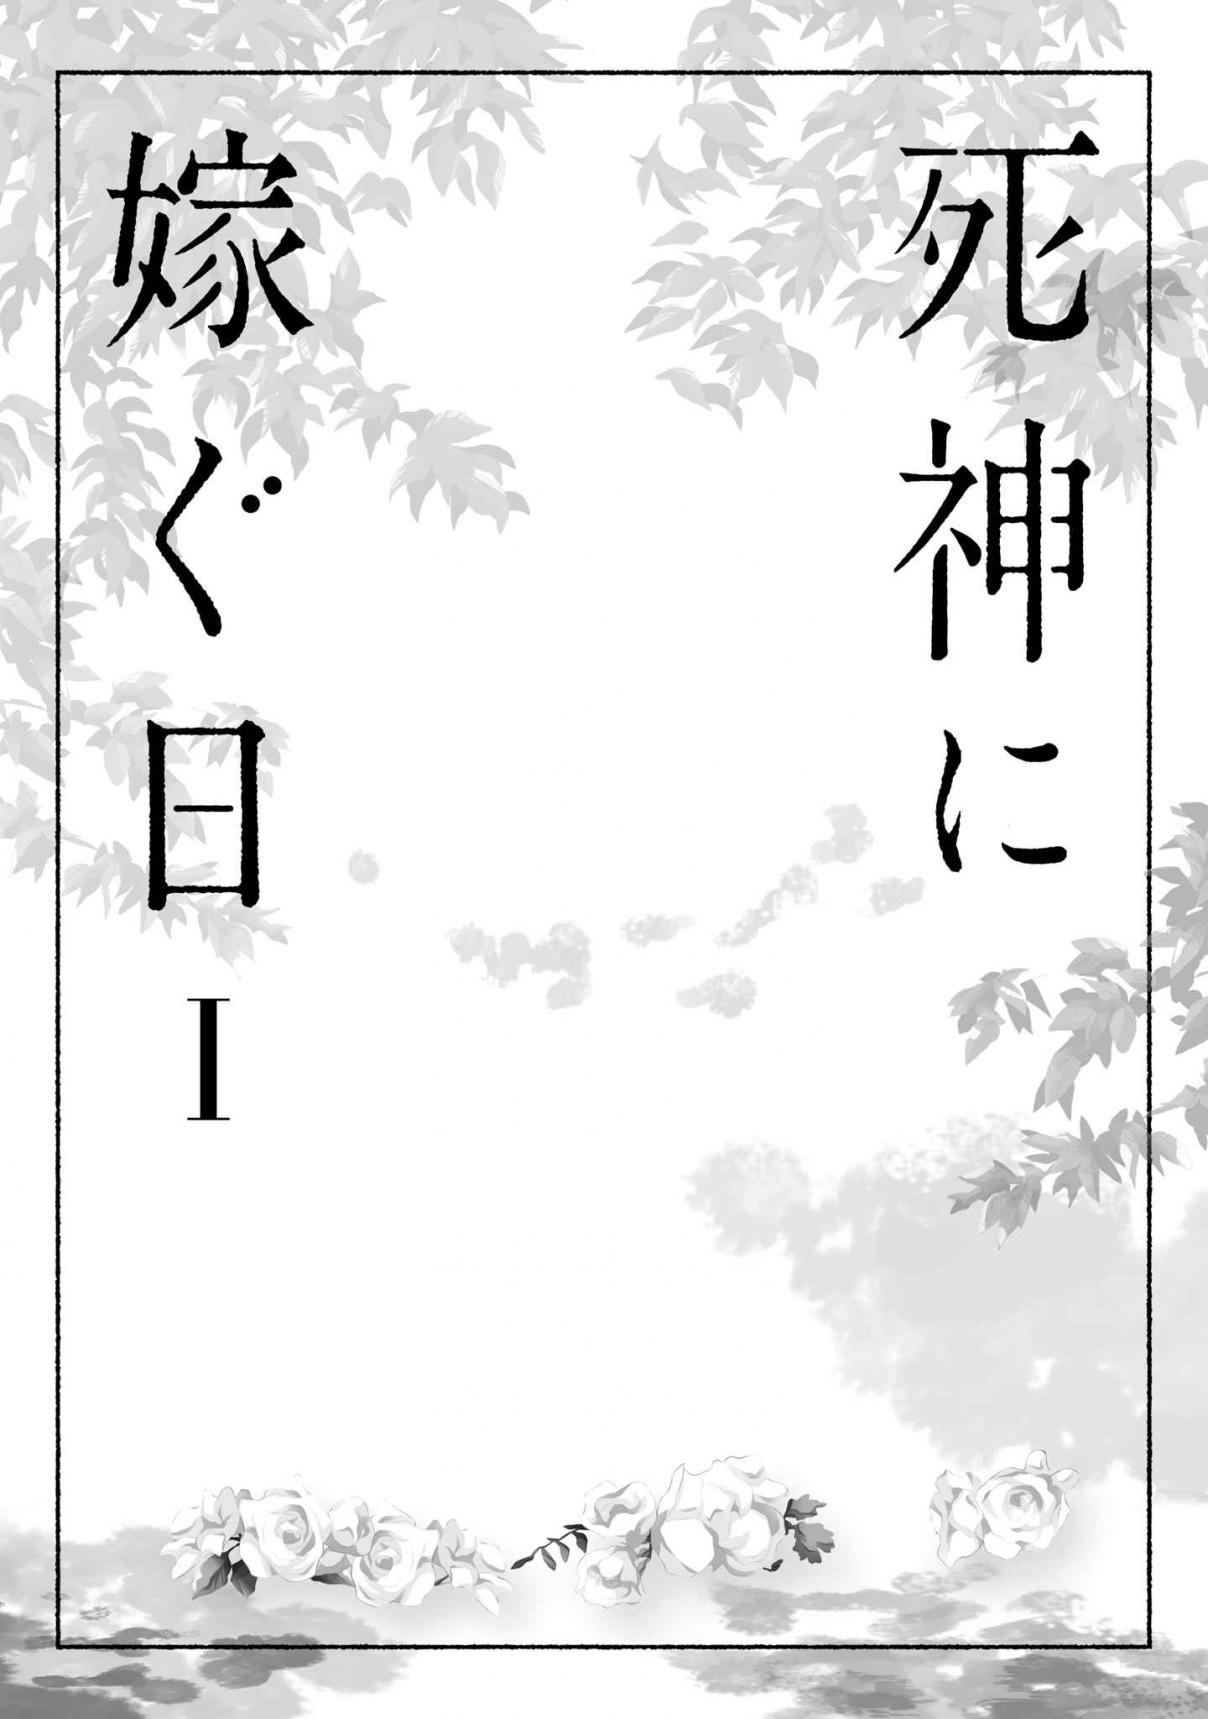 Shinigami ni Totsugu Hi Vol. 1 Ch. 1